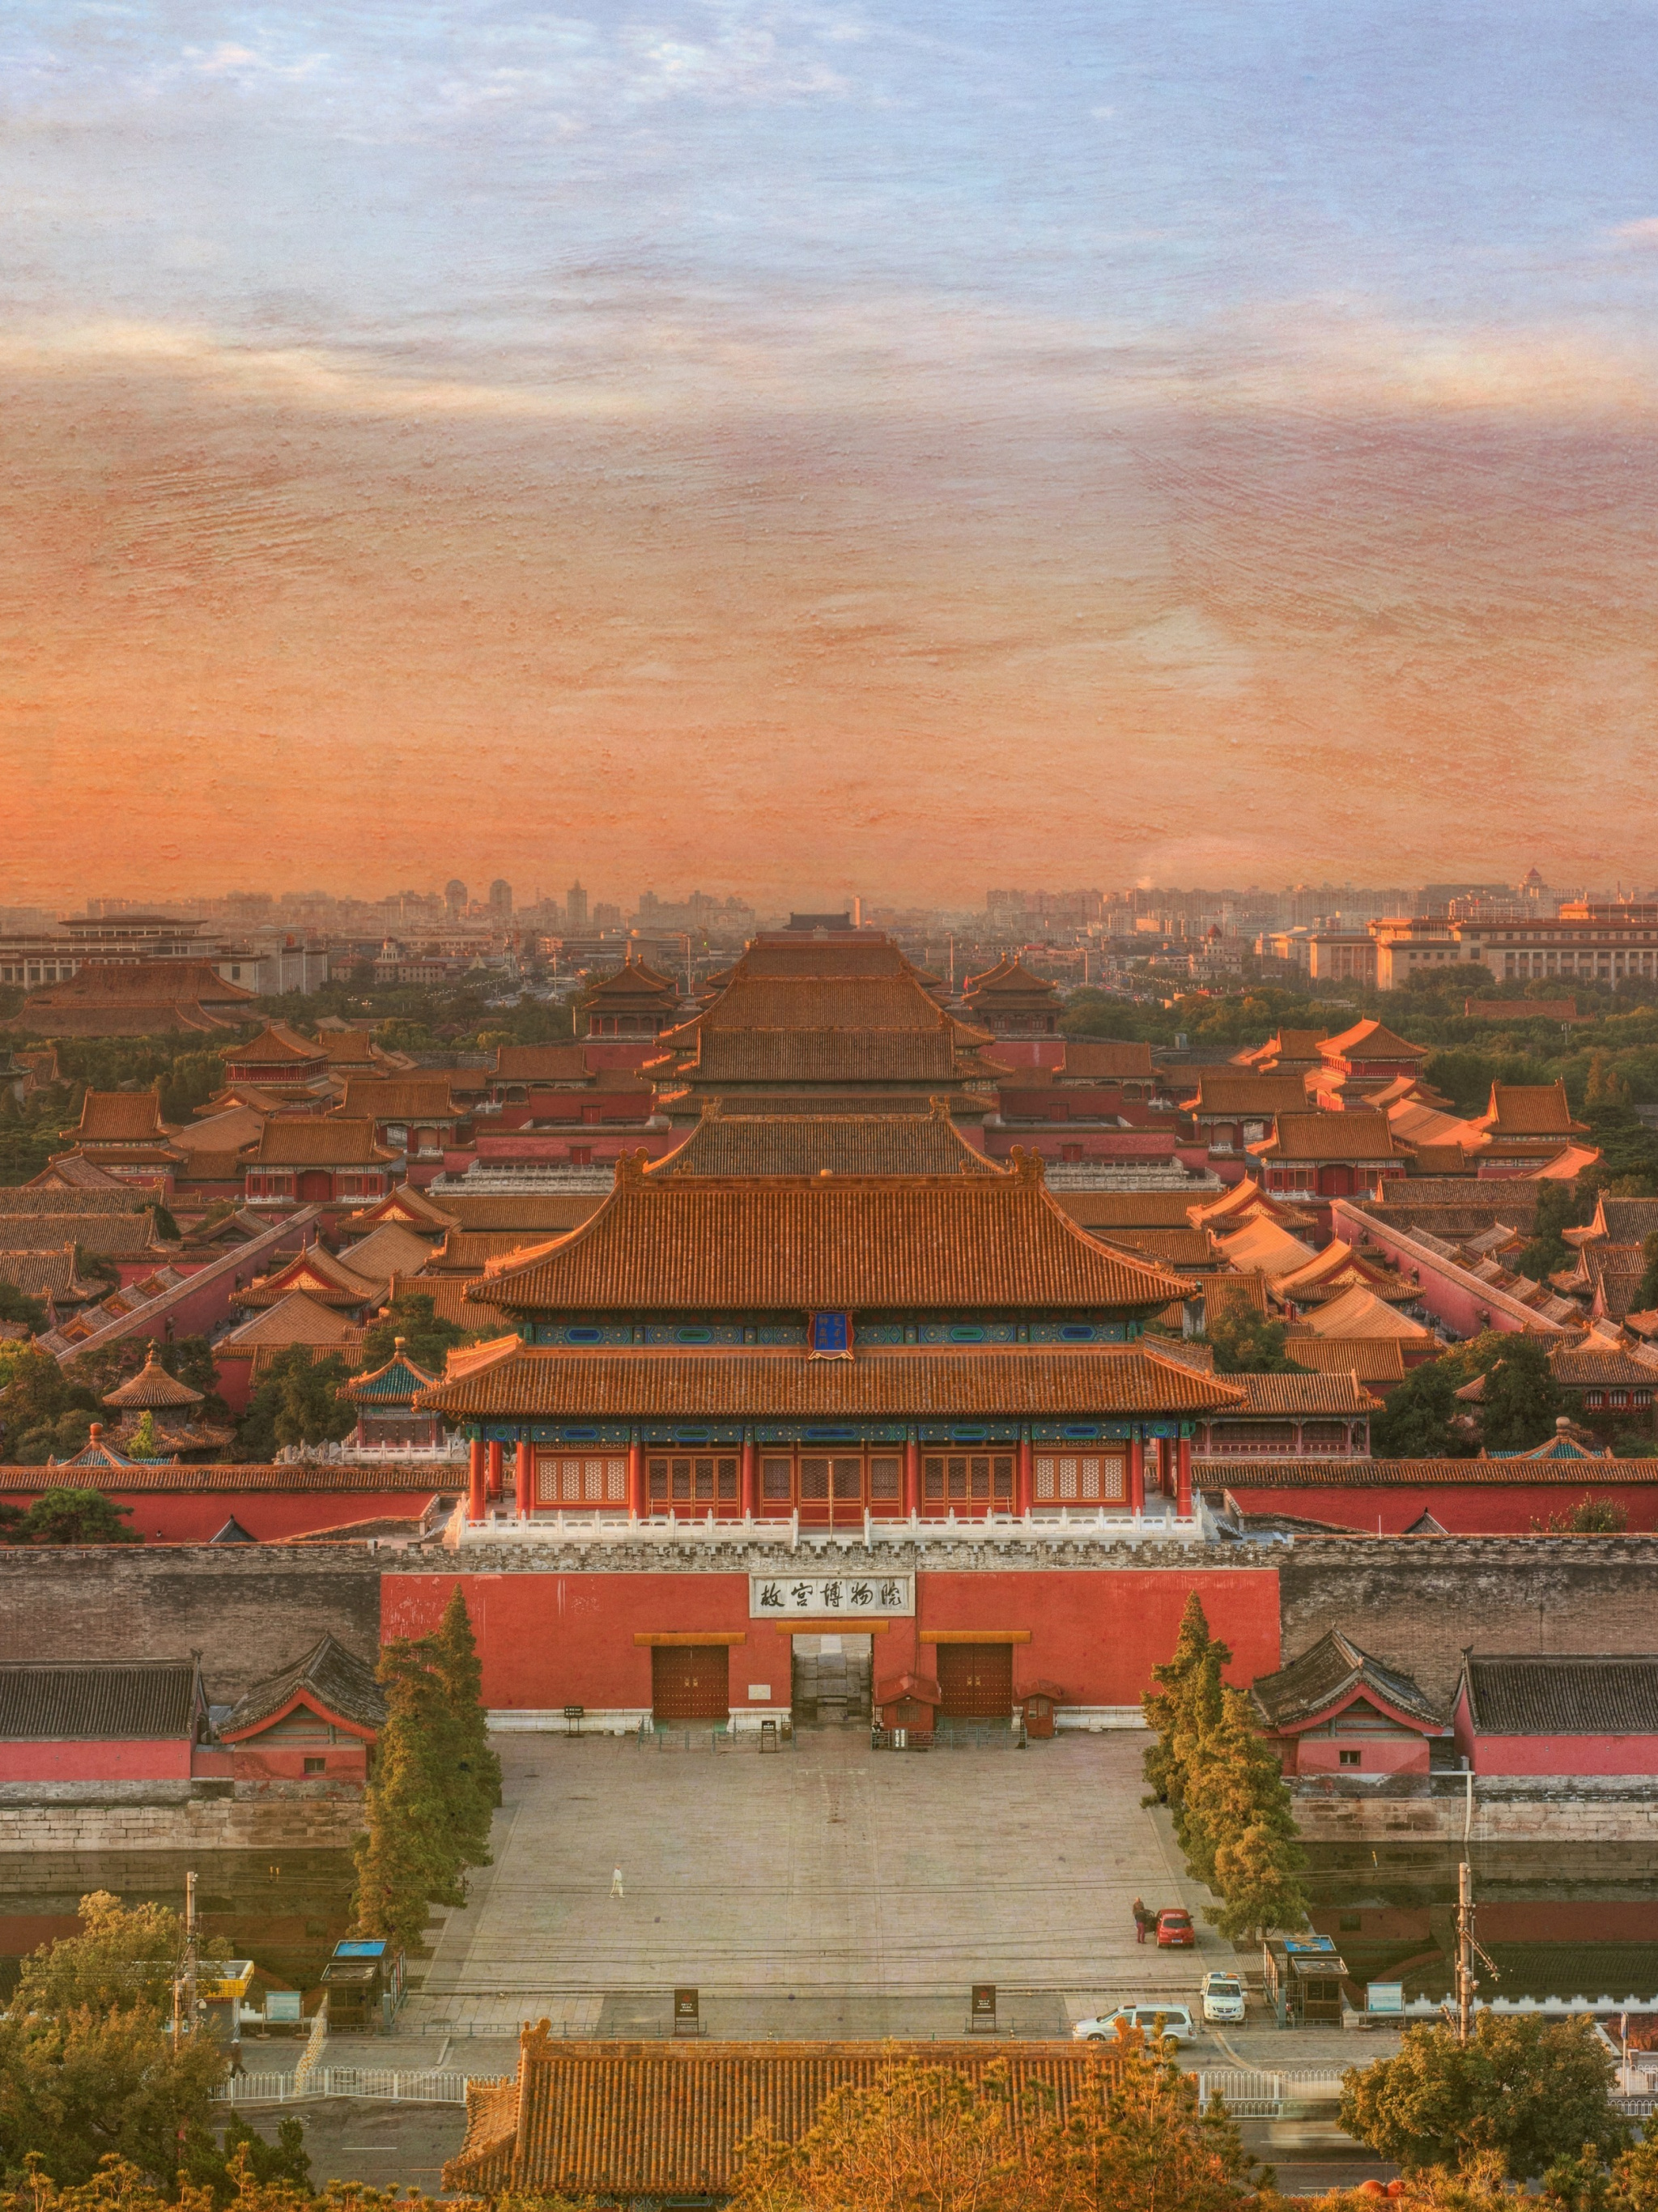 Forbidden City wallpapers, Beijing China, Desktop backgrounds, Explore Beijing, 2050x2740 HD Phone